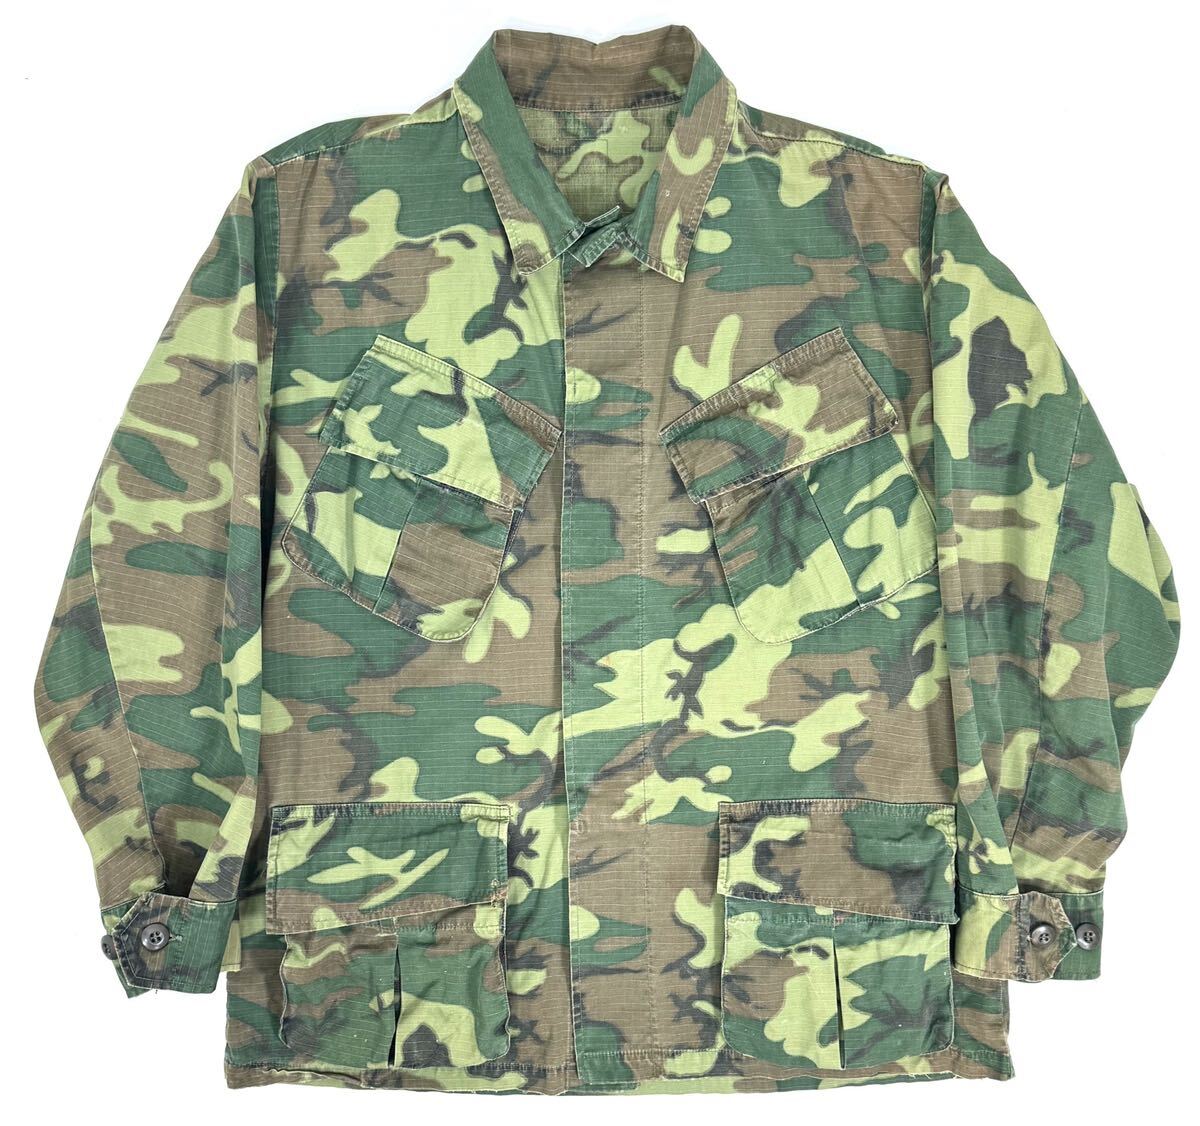 Late 1960s U.S.ARMY Jungle Fatigue Shirt 5th M〜L Green leaf camo ヴィンテージ ジャングルファティーグシャツ ジャケット ミリタリー